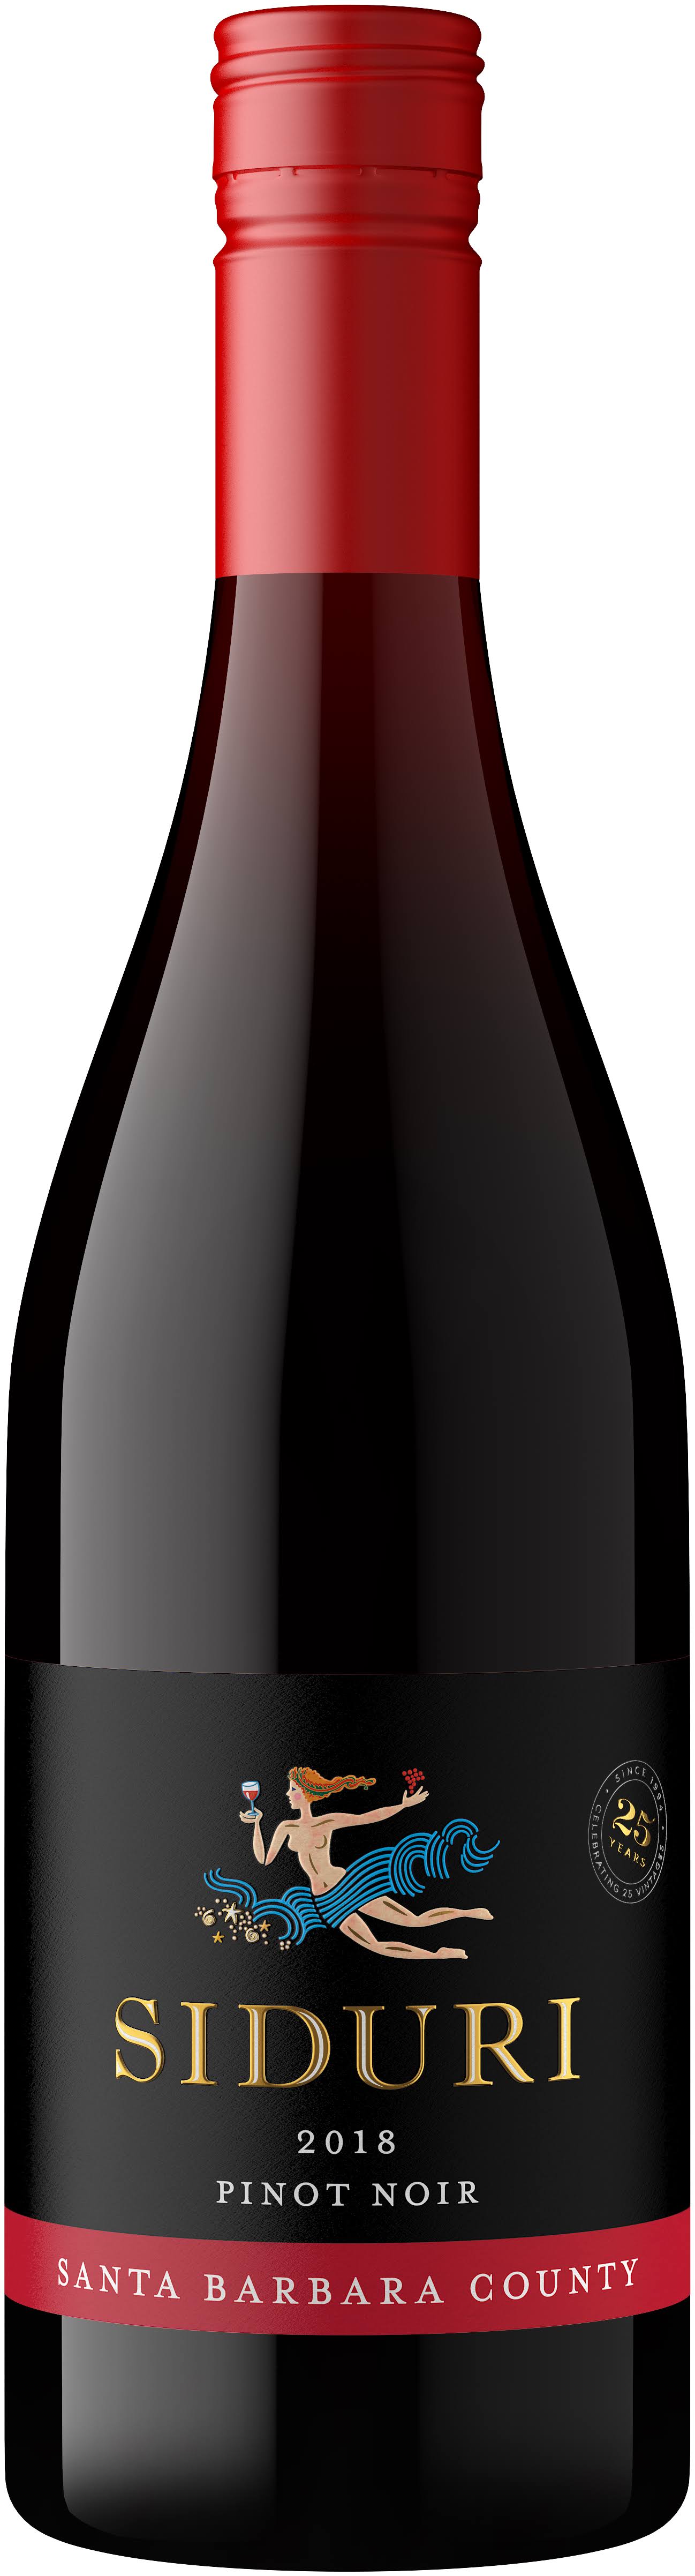 Siduri 2017 Santa Barbara Pinot Noir 750ml